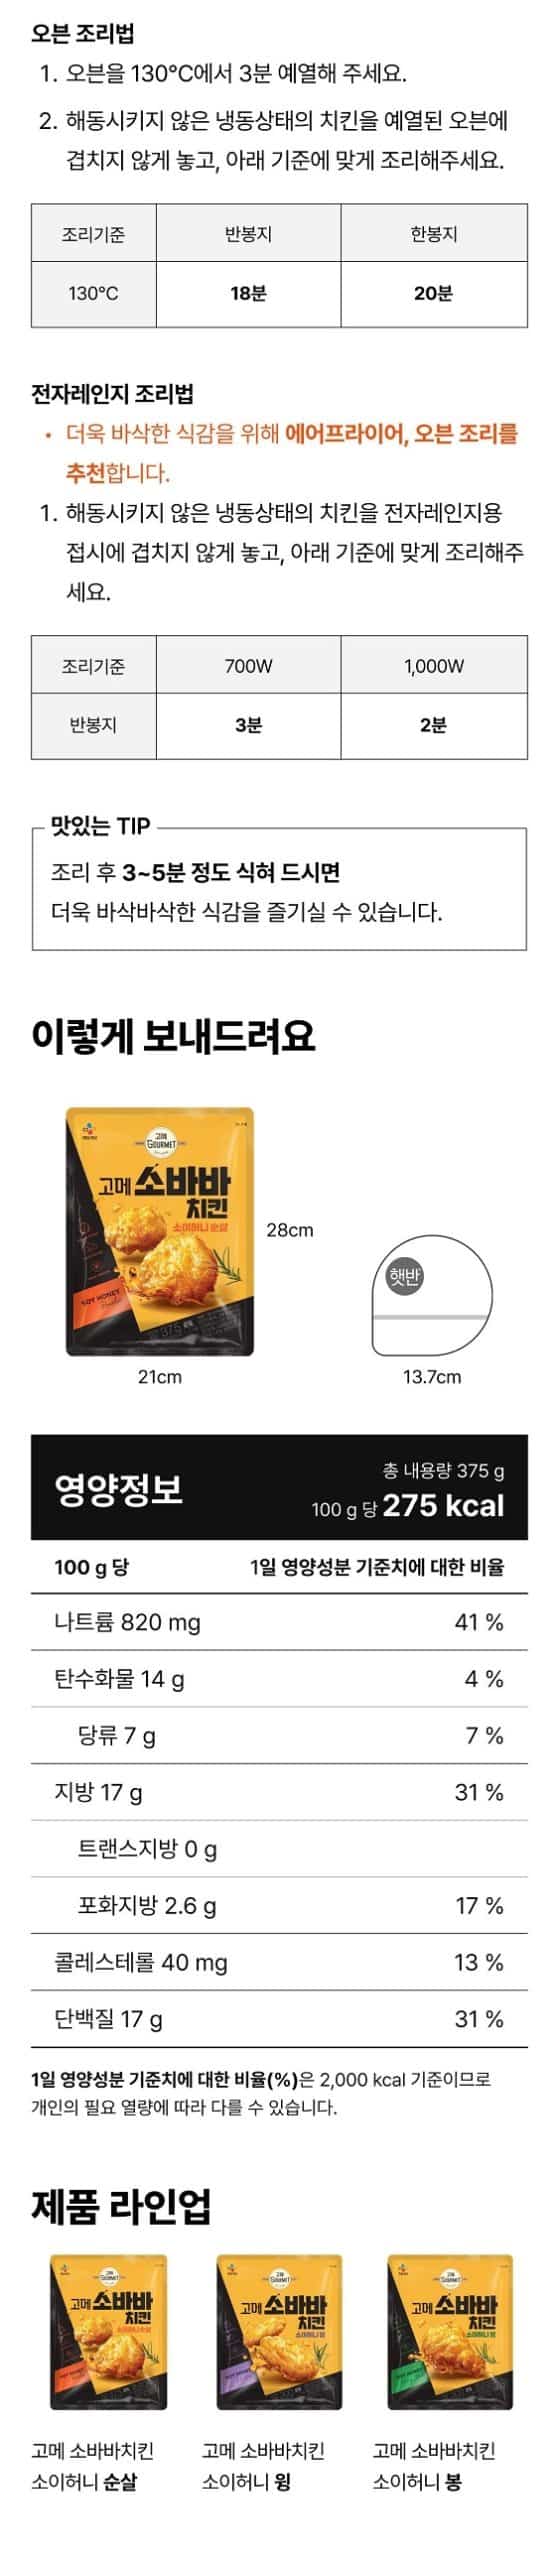 韓國食品-[CJ] 고메 소바바치킨 소이허니 (순살) 375g